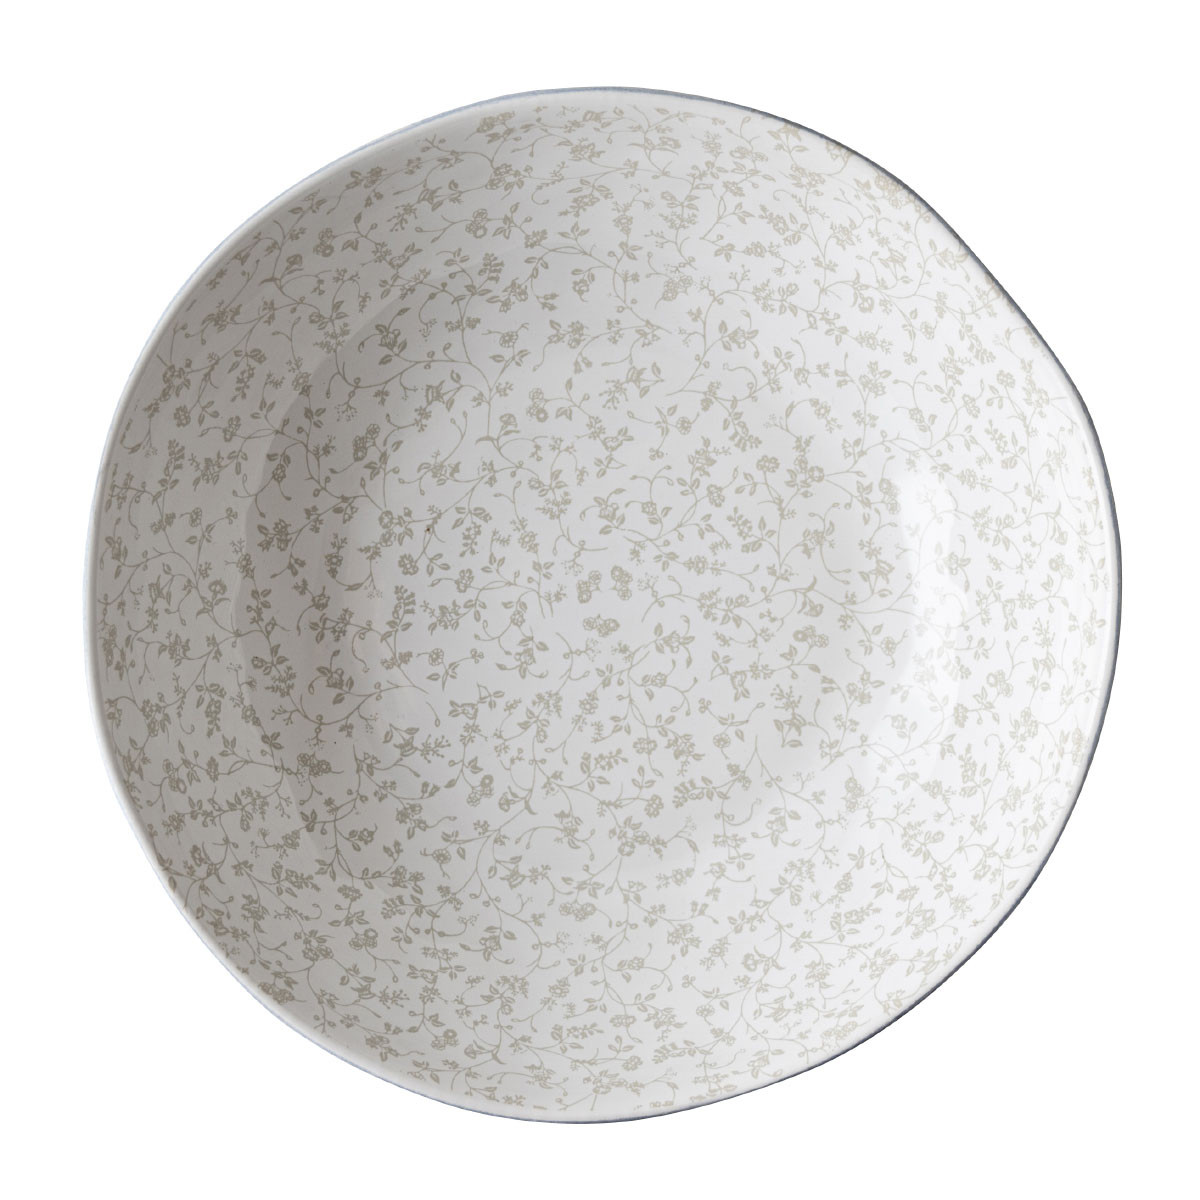 Πιάτο Βαθύ Κεραμικό Laura Ashley White Decorated Artisan 22cm